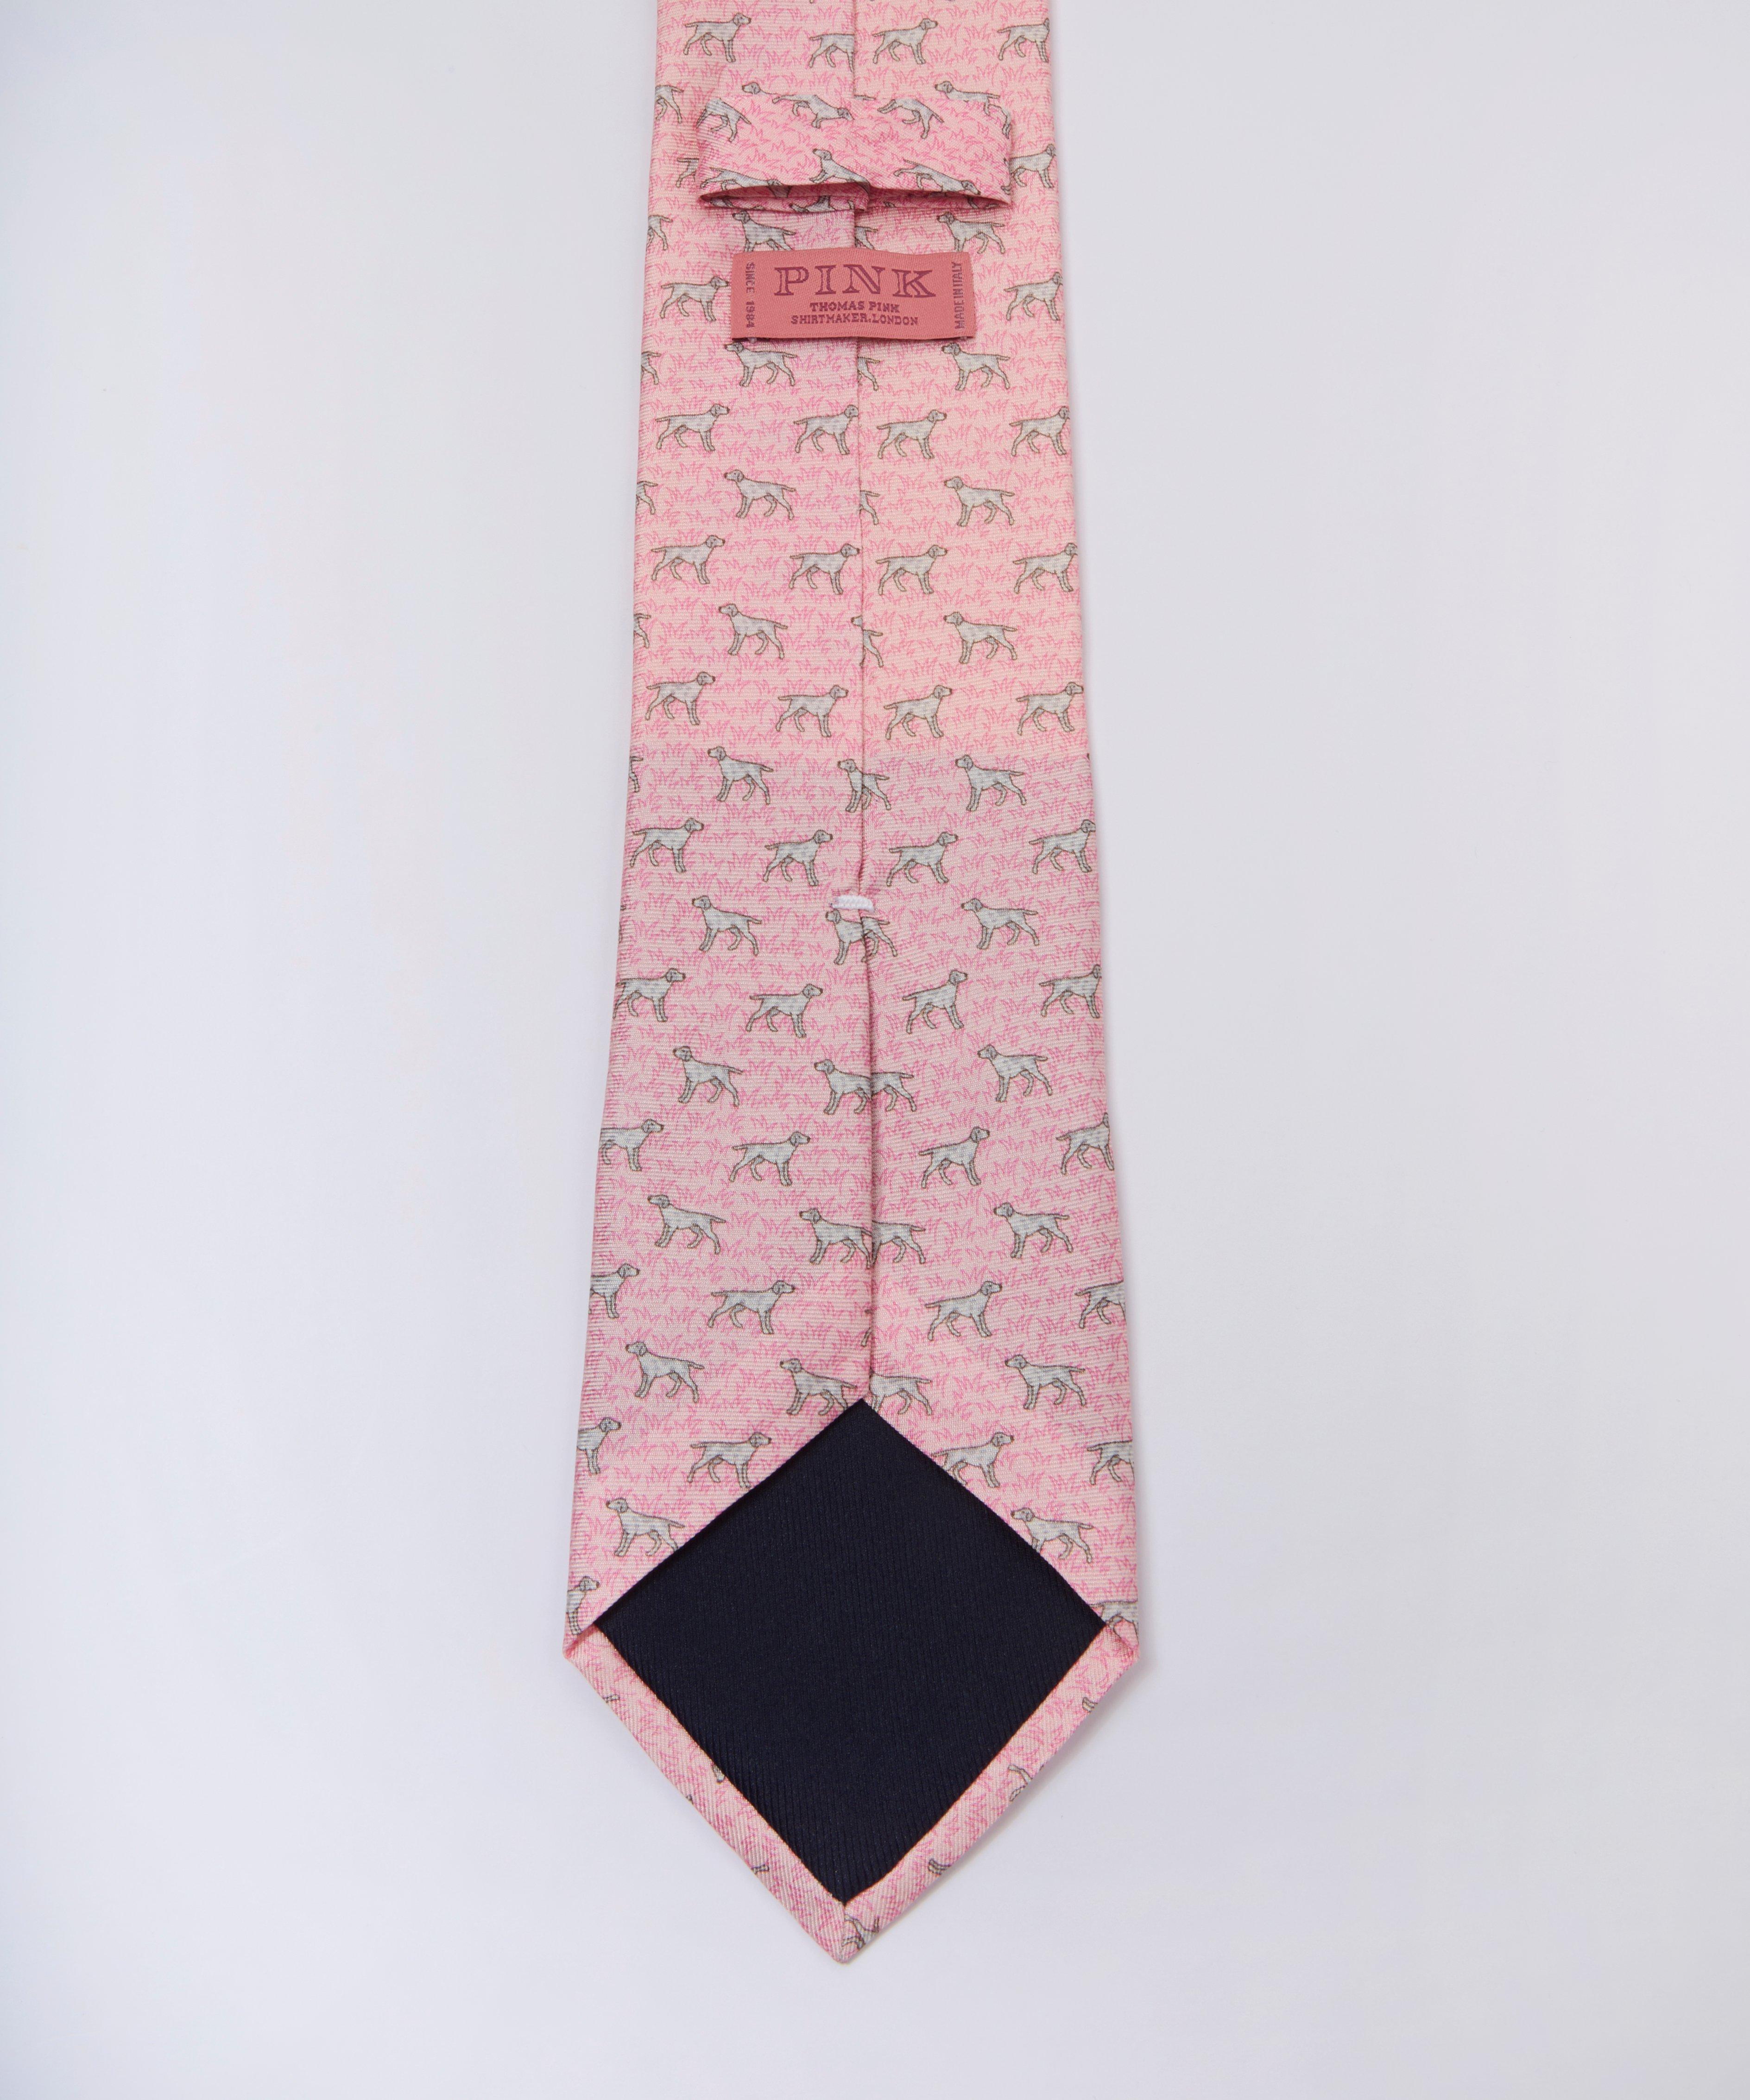 Love Thomas Pink ties for men  Thomas pink, Pink club, Pink street